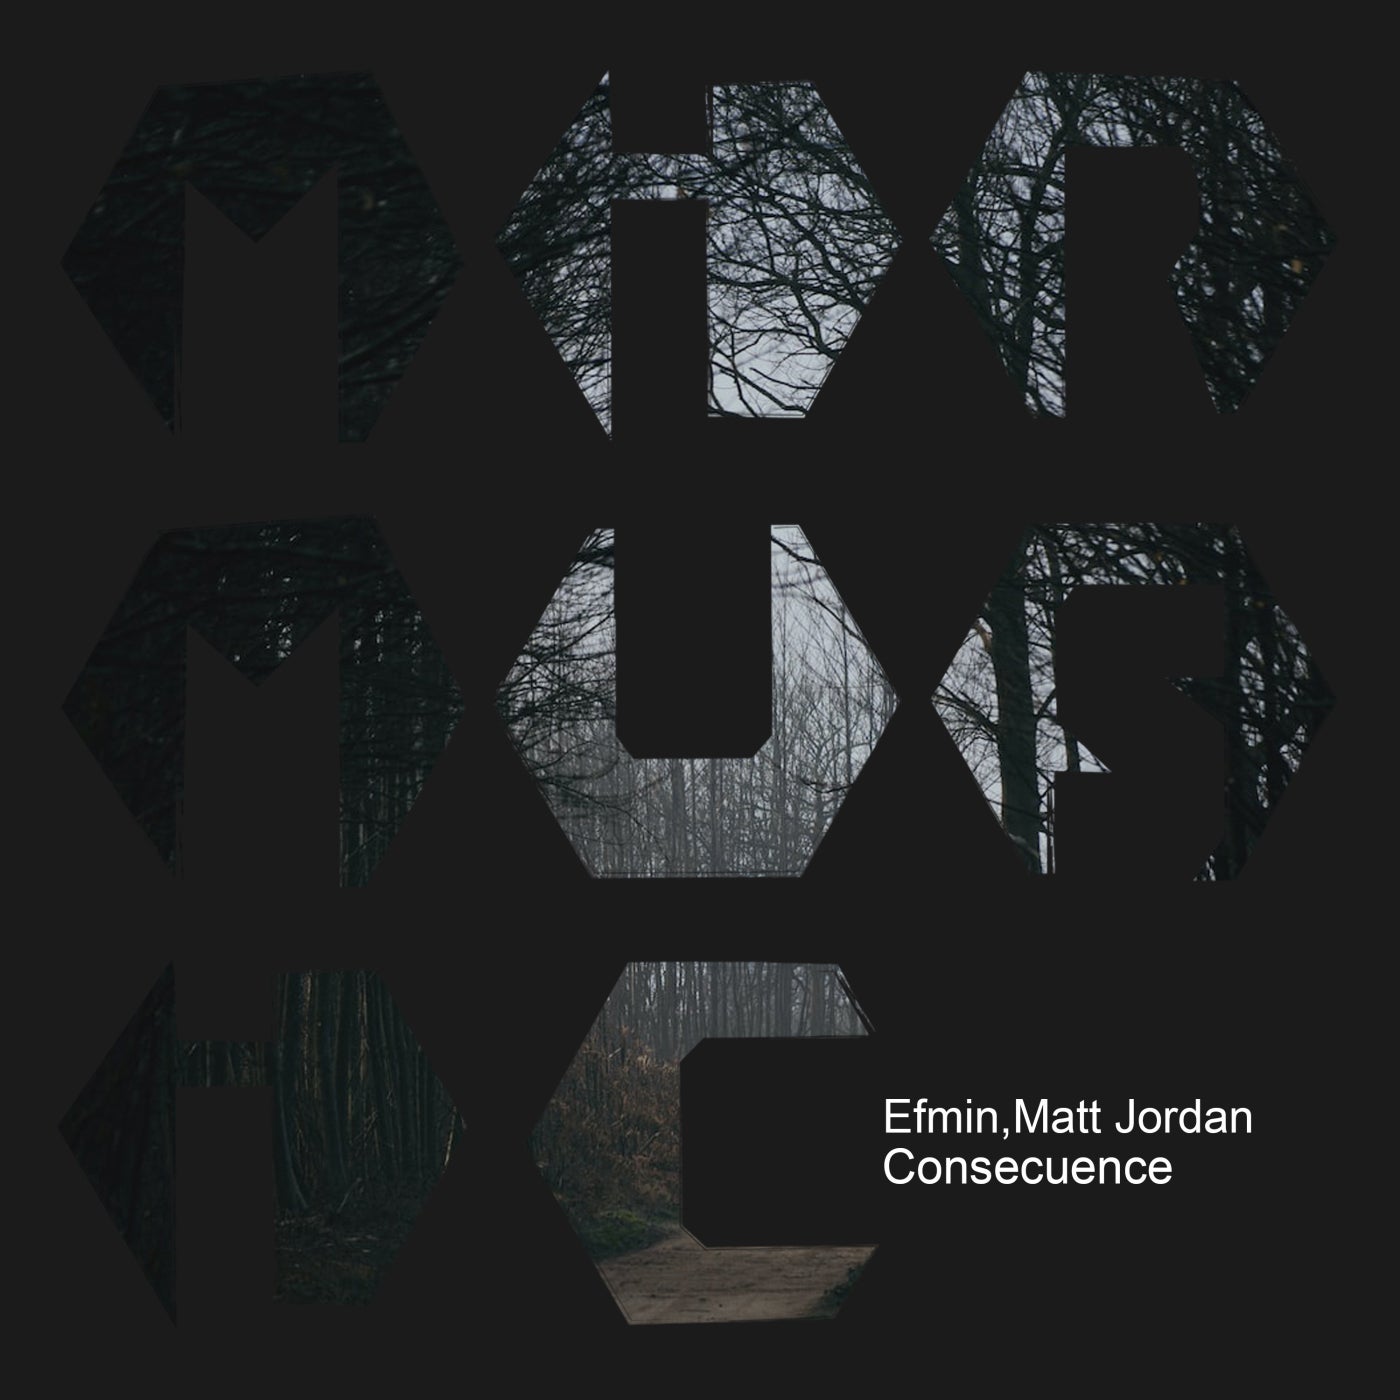 Matt Jordan & Efmin - Consecuence [MIR MUSIC]